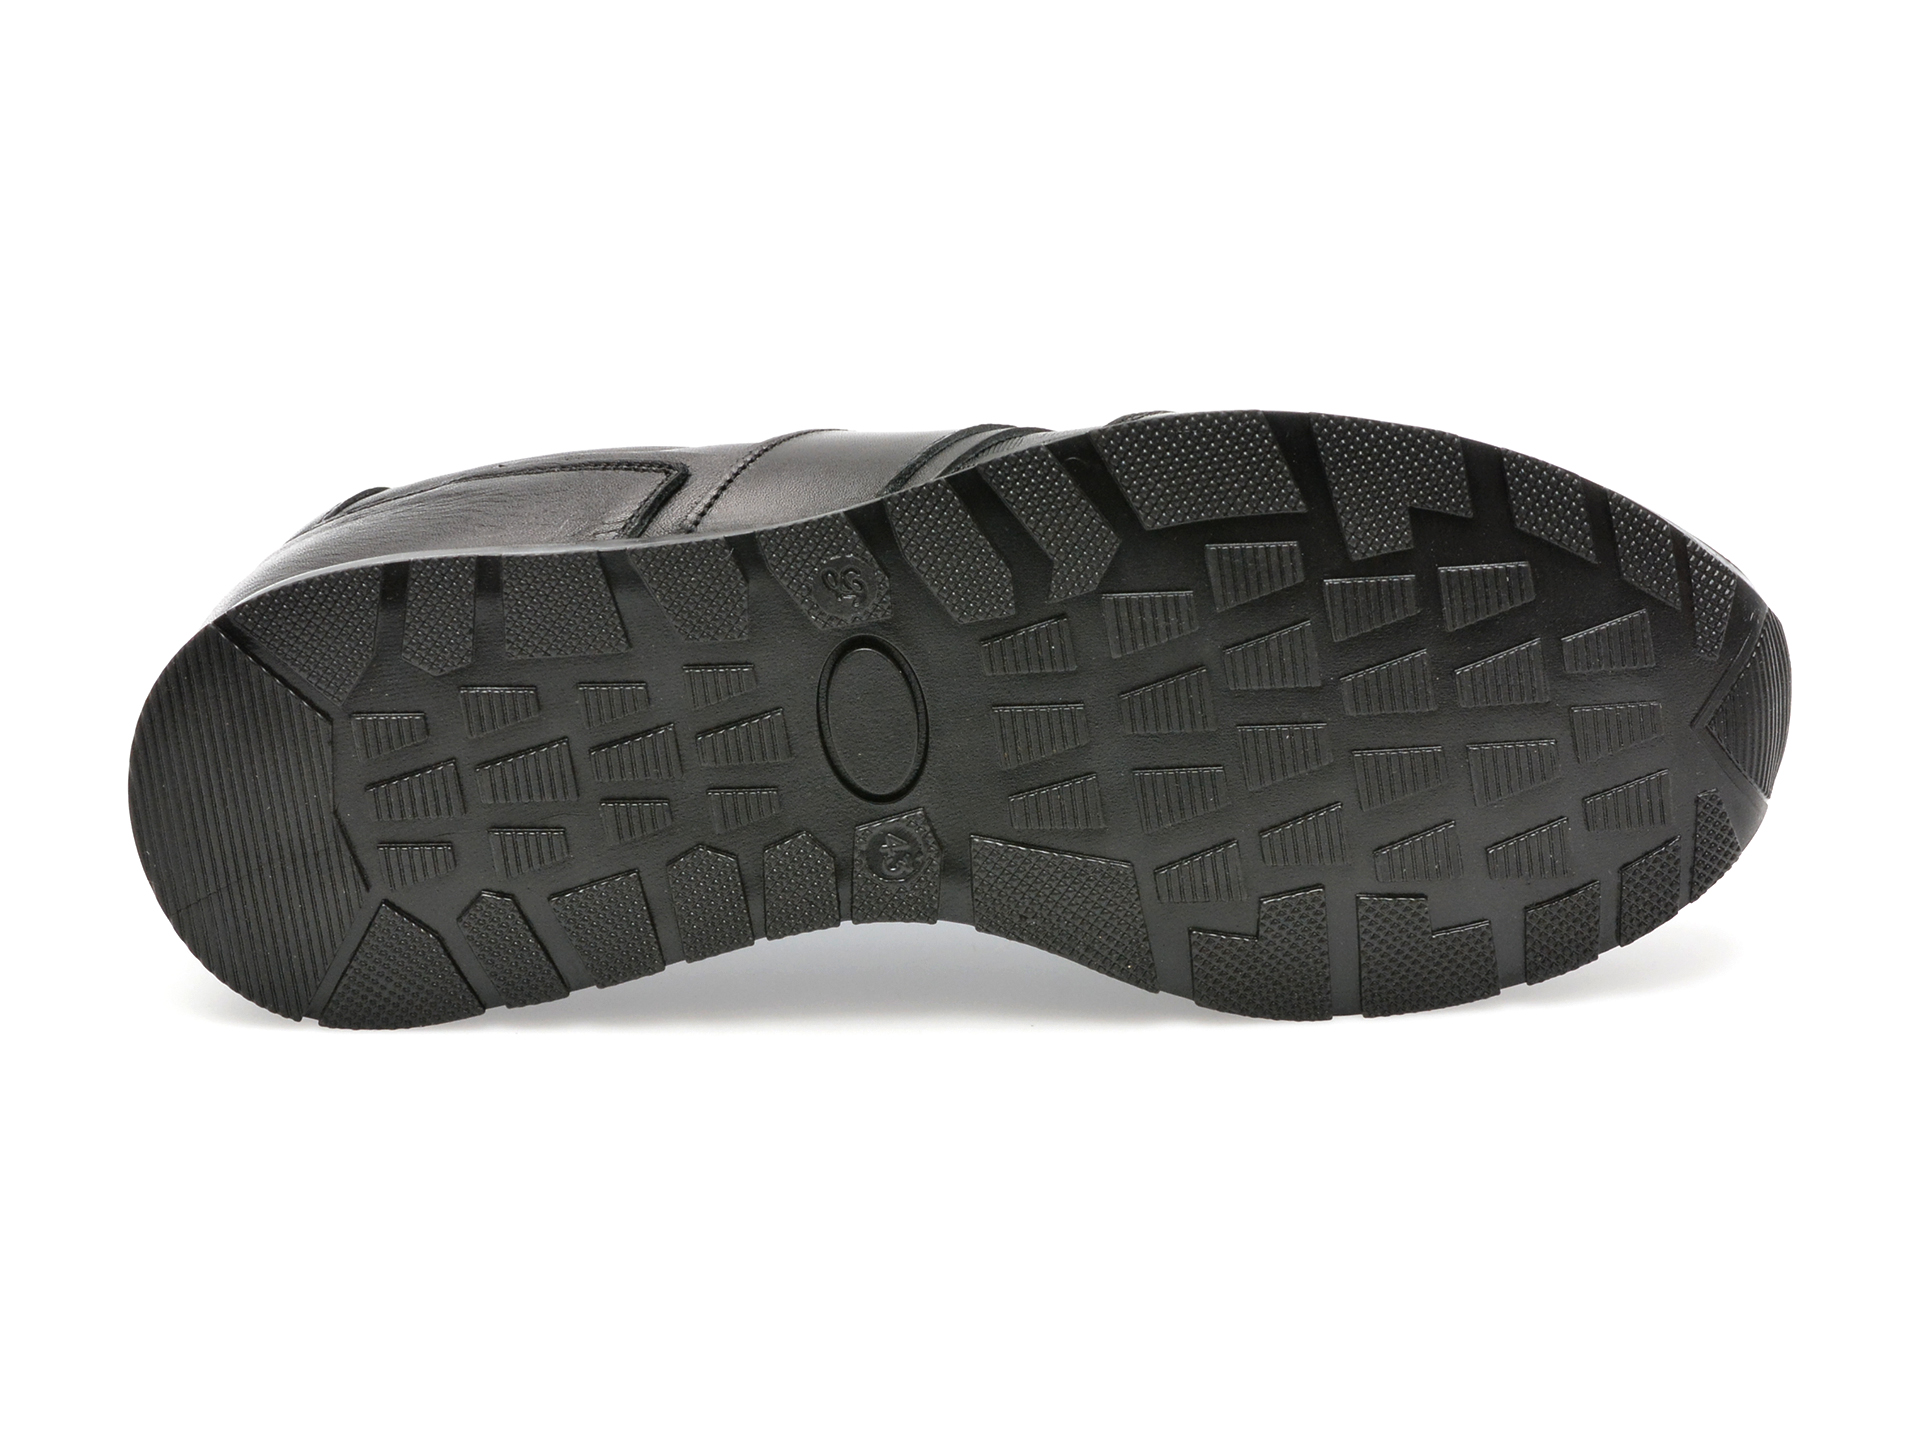 Pantofi AXXELLL negri, NY201, din piele naturala